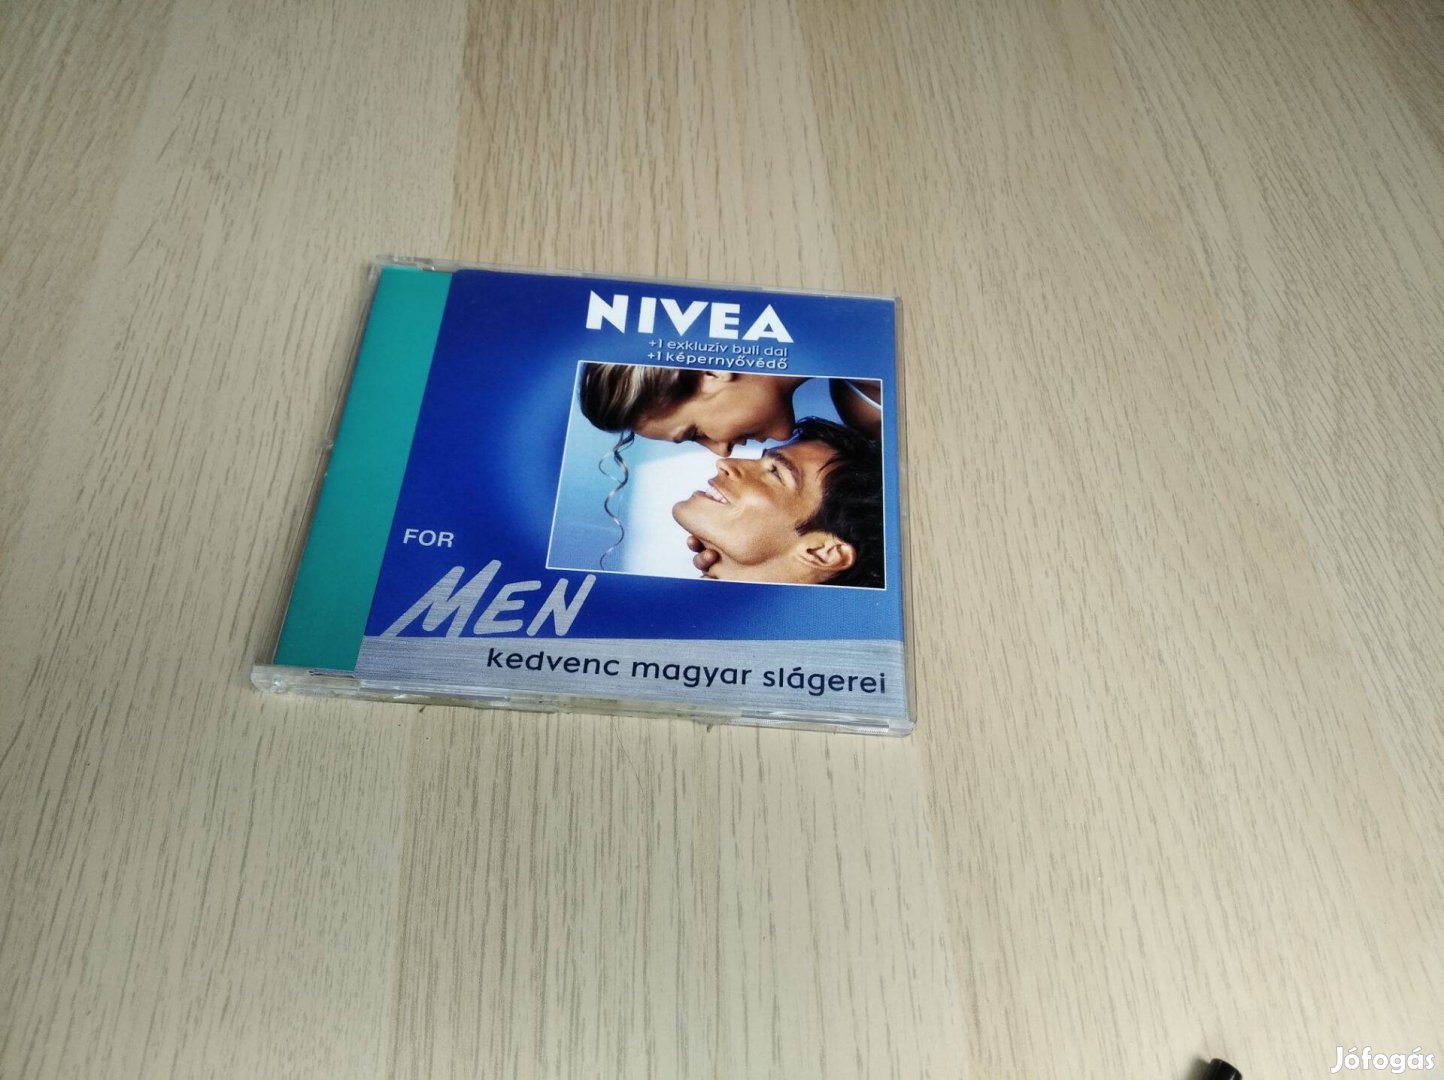 Nivea For Men - Kedvenc magyar slágerei / Promo CD